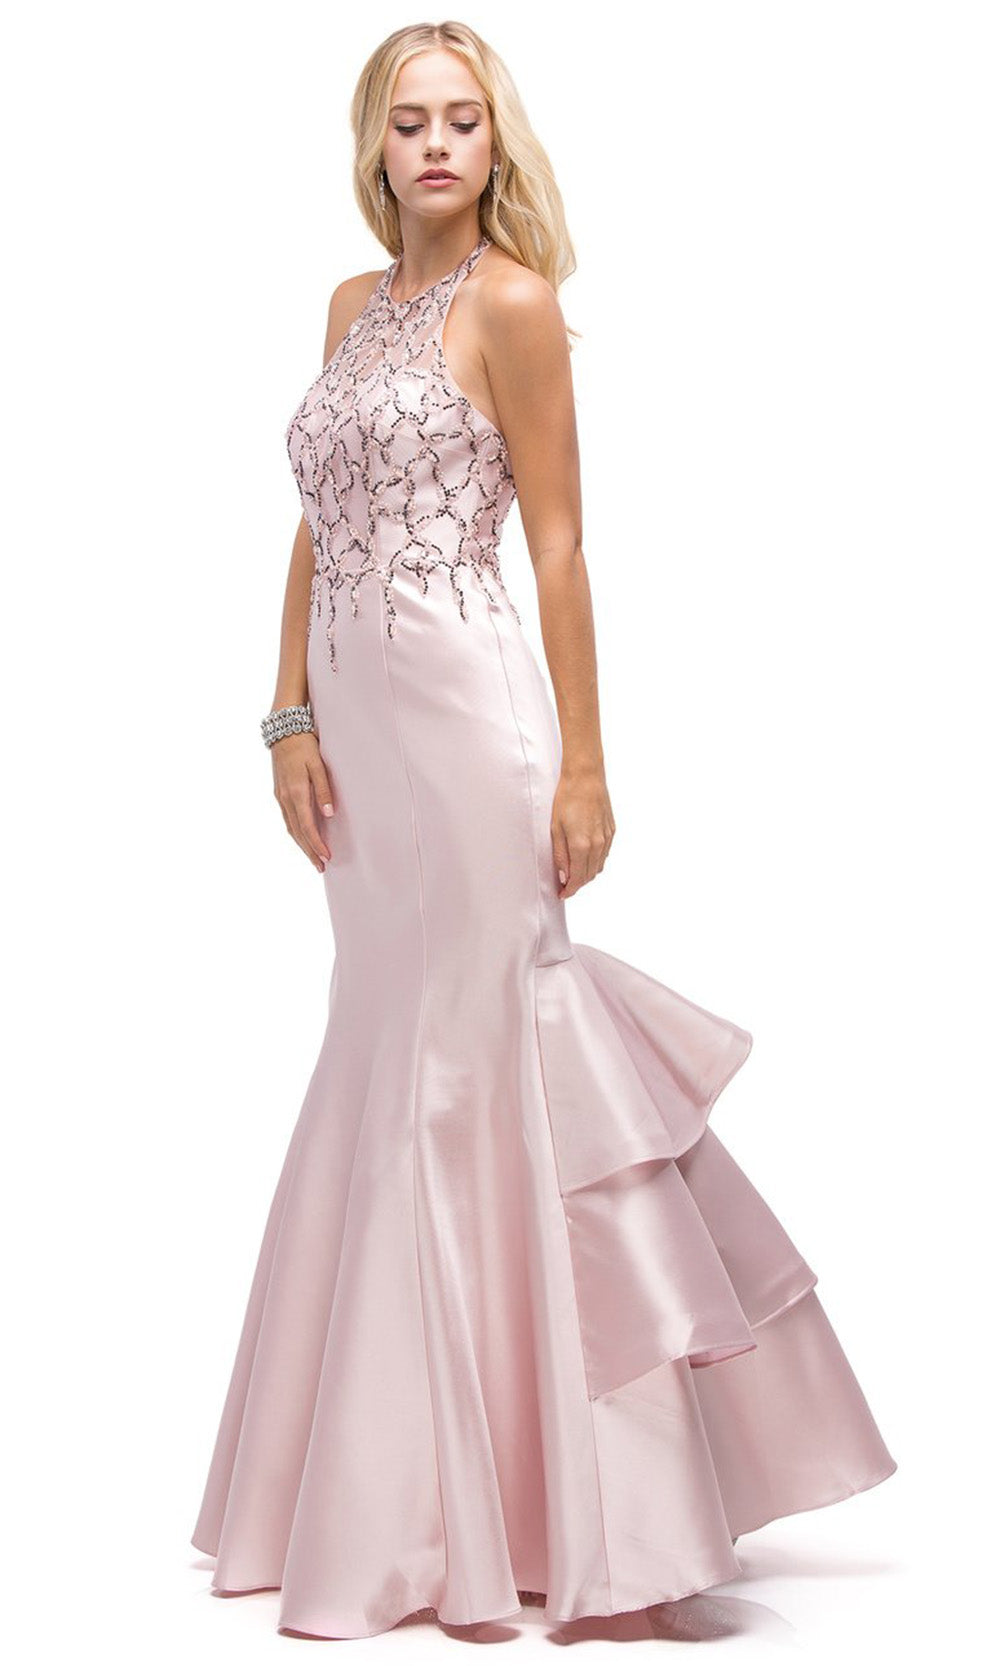 Dancing Queen - 9910 Embellished Halter Tiered Mermaid Dress In Pink